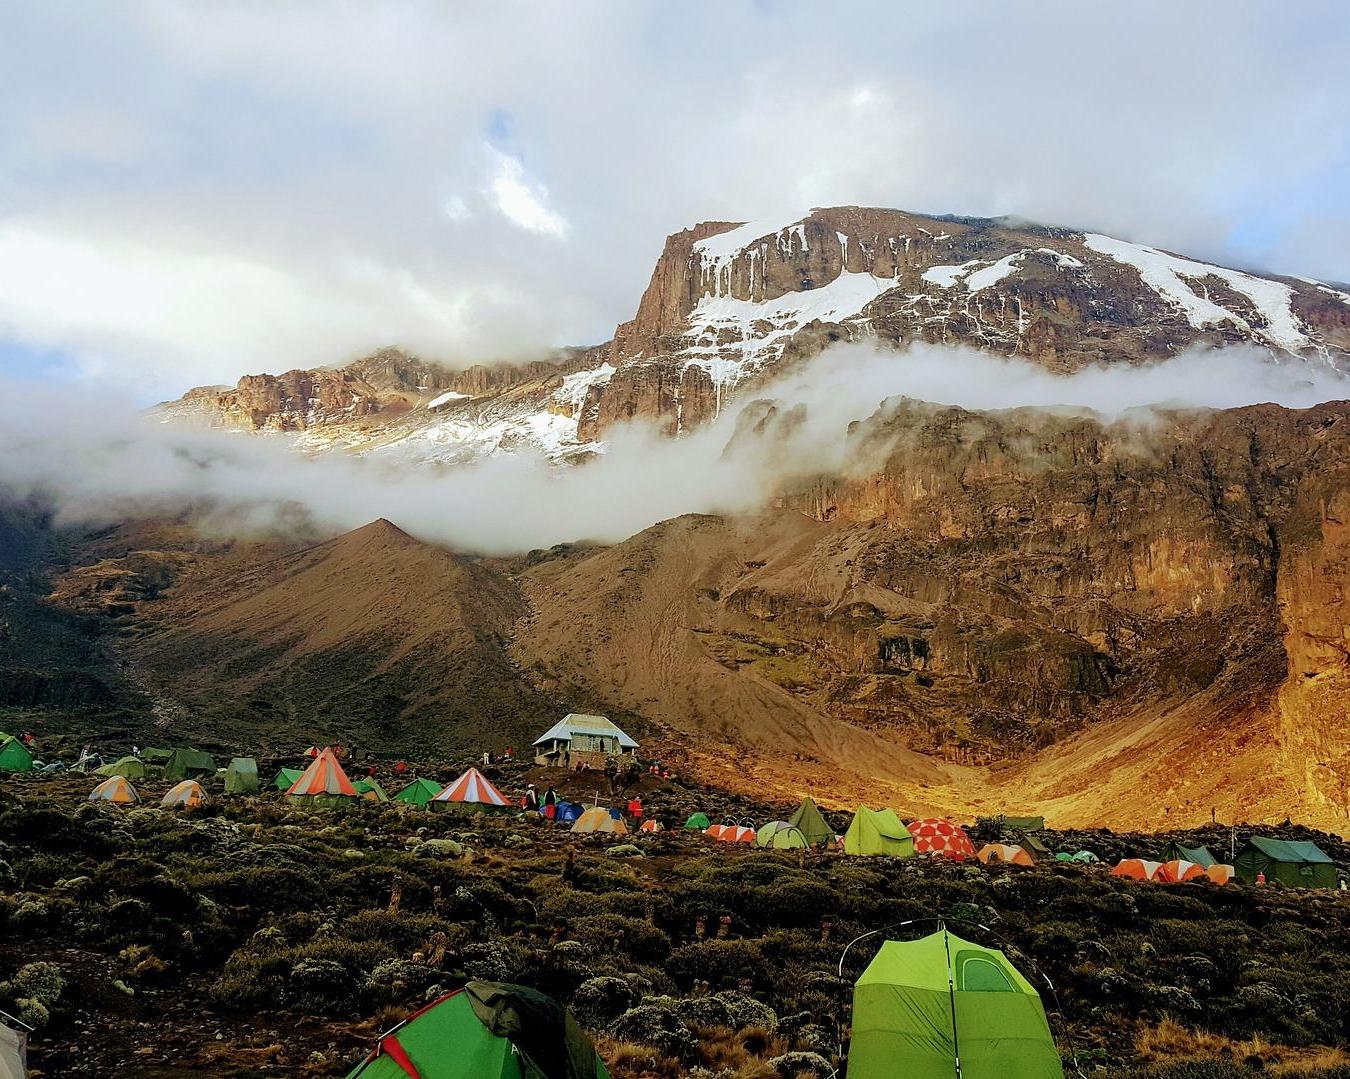 Gruppentour "Kilimandscharo Besteigung - Machame Route"